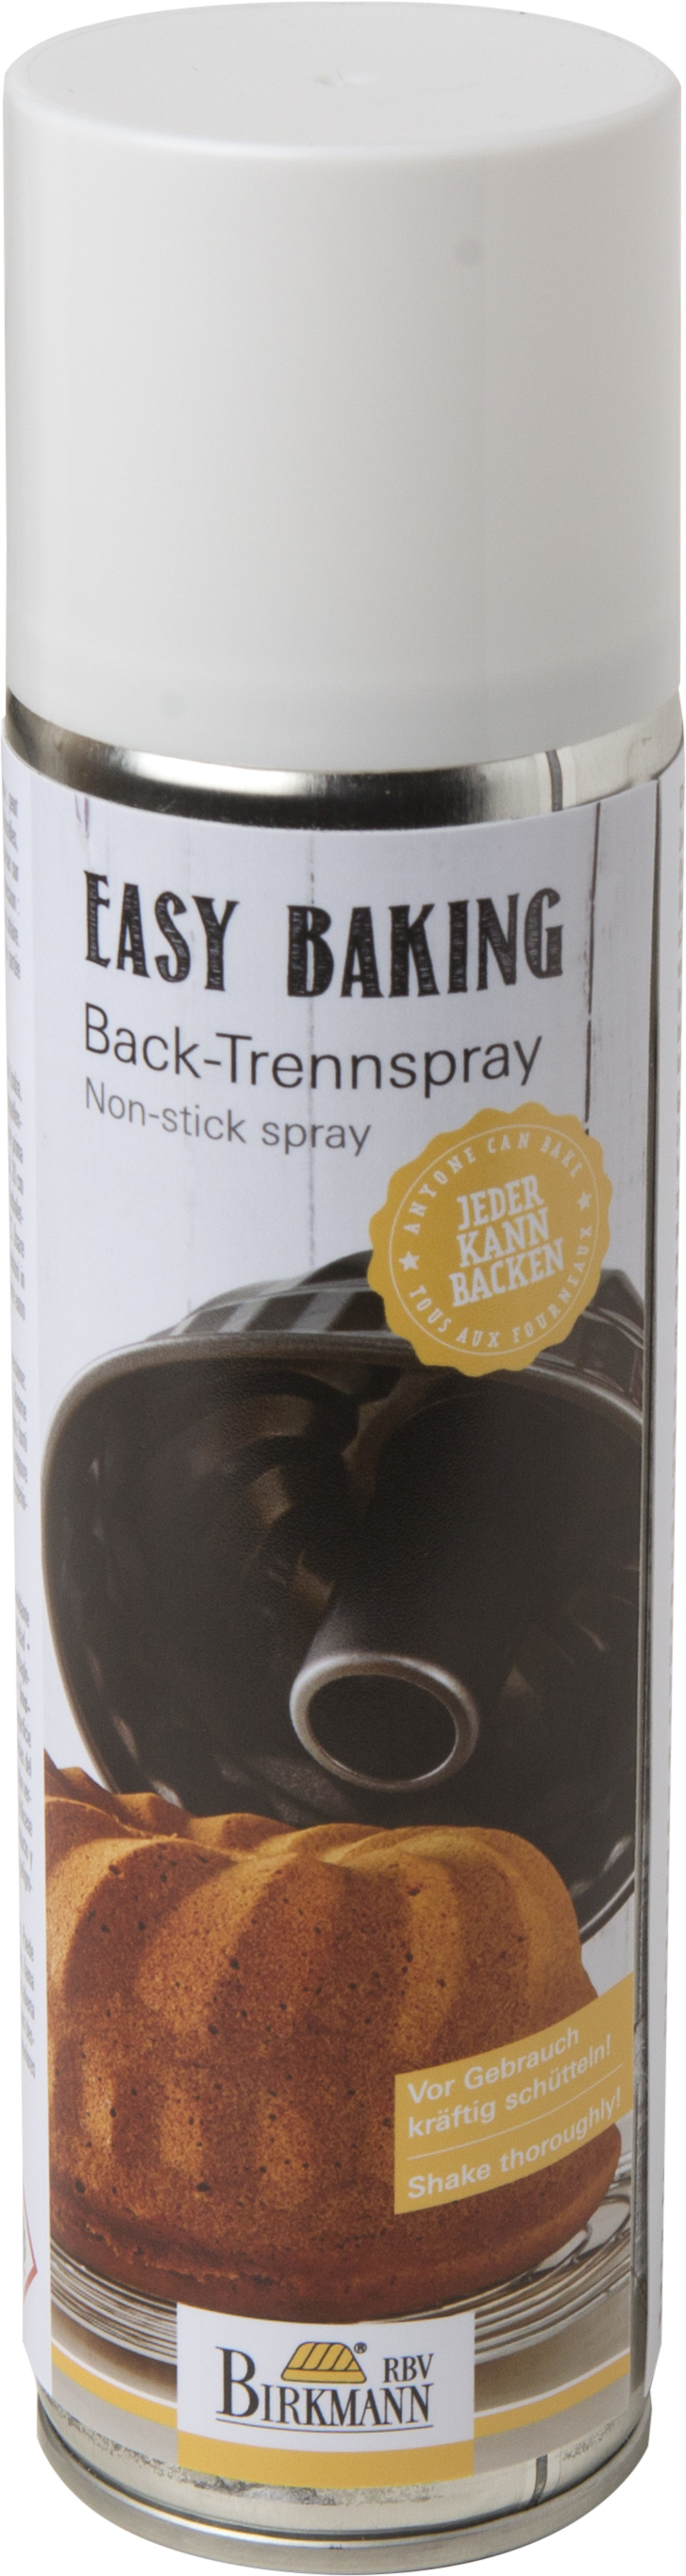 Birkmann Back-Trennspray Easy Baking